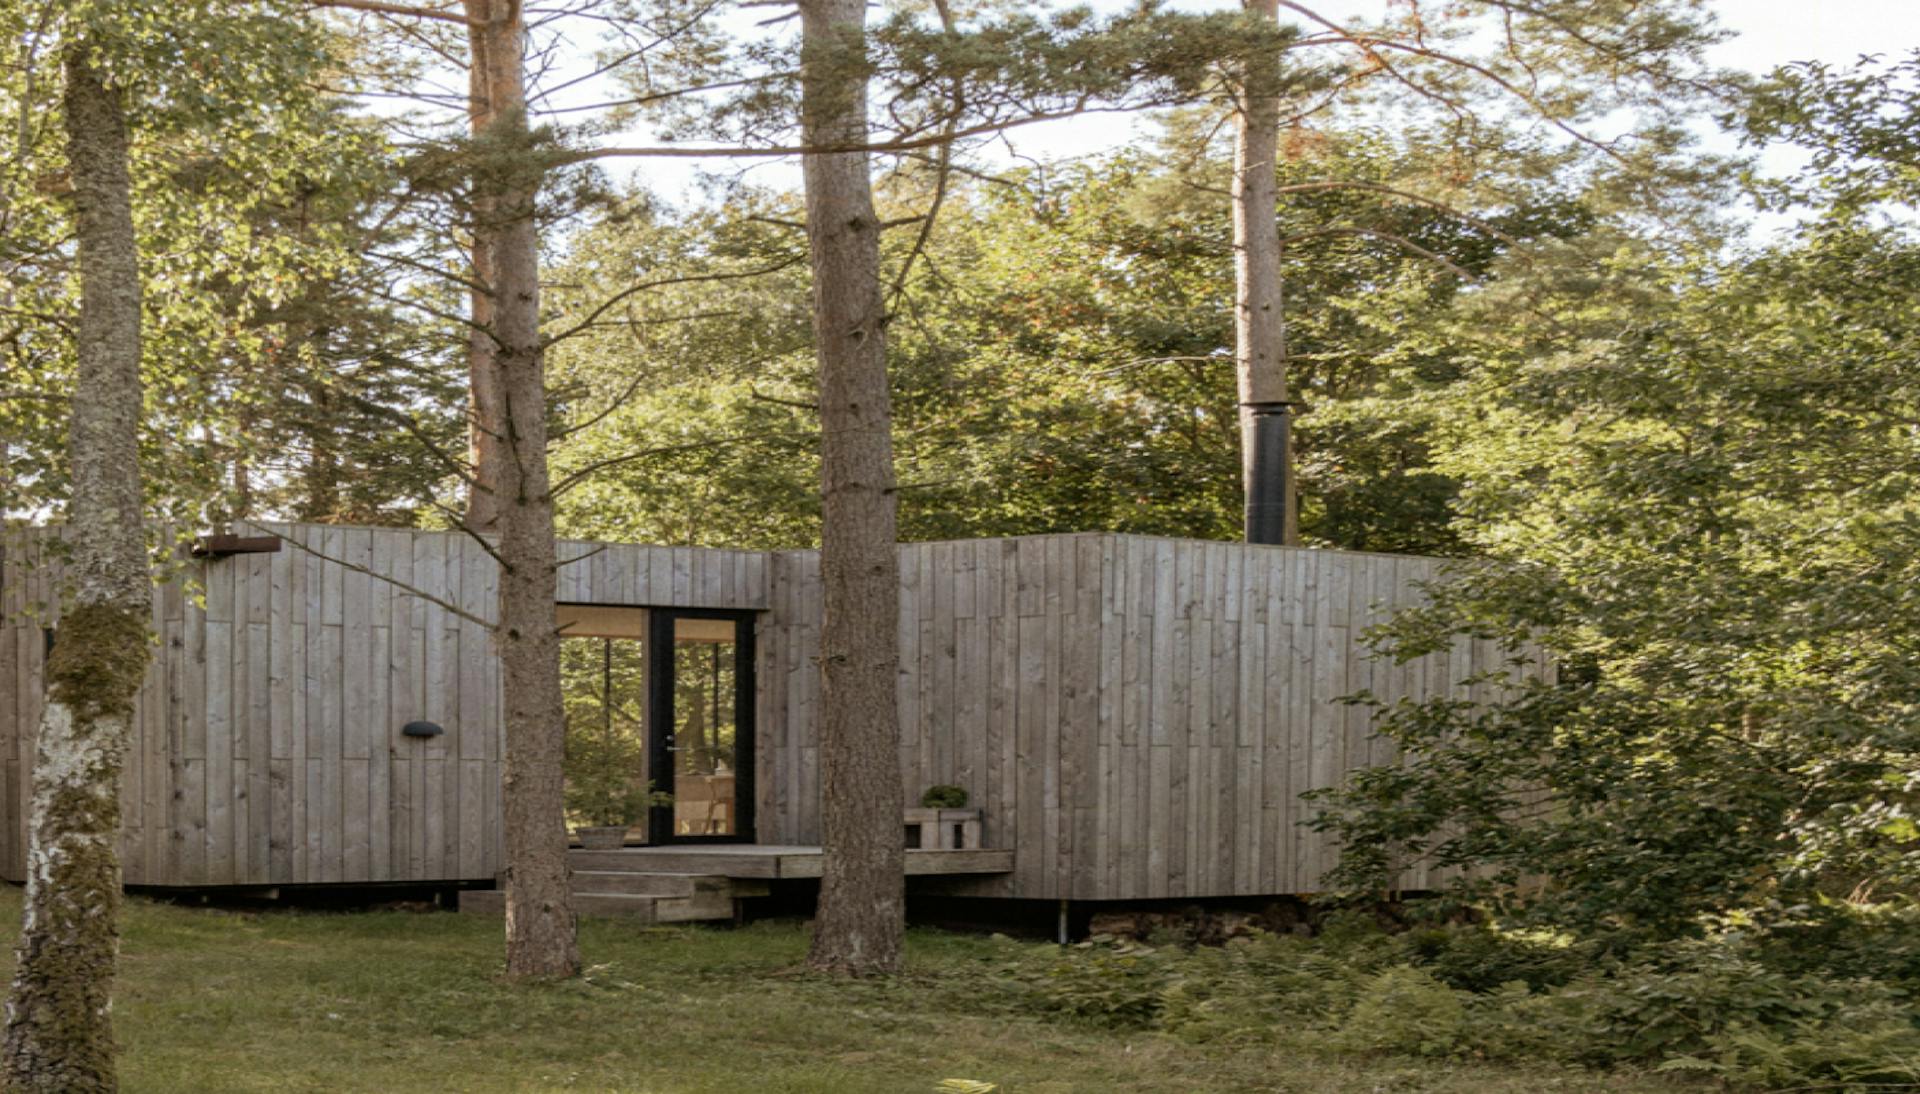 Hytteutleie av vakker hytte i nordisk stil med lyse vegger i bjørkefinér